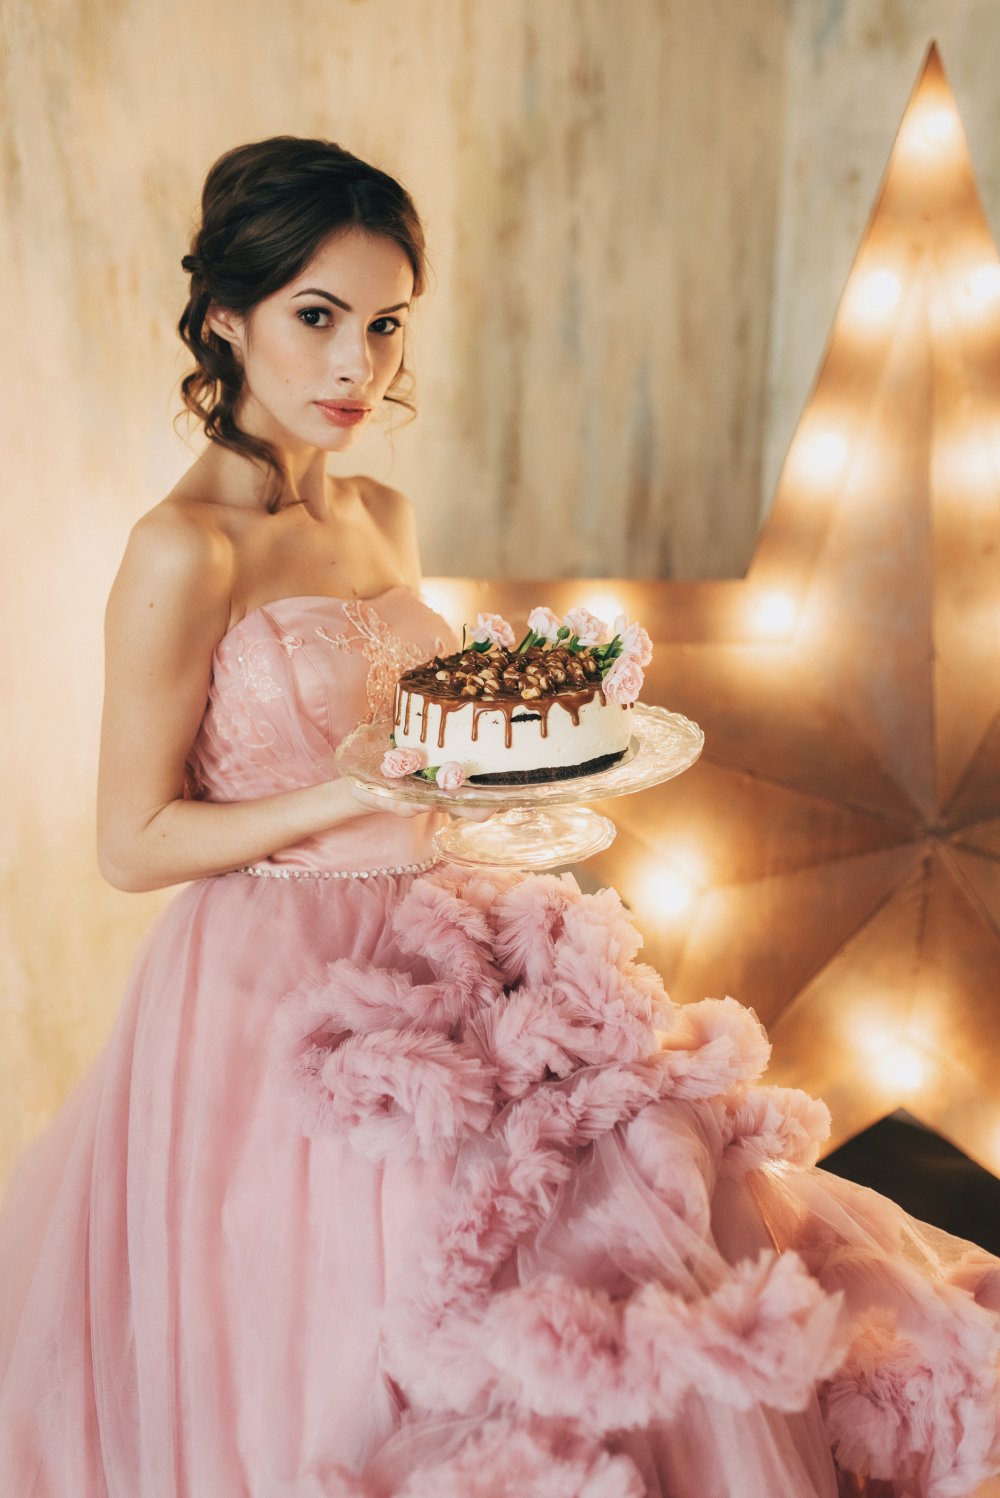 Невеста с мини-тортом покрытым орехами и карамелью